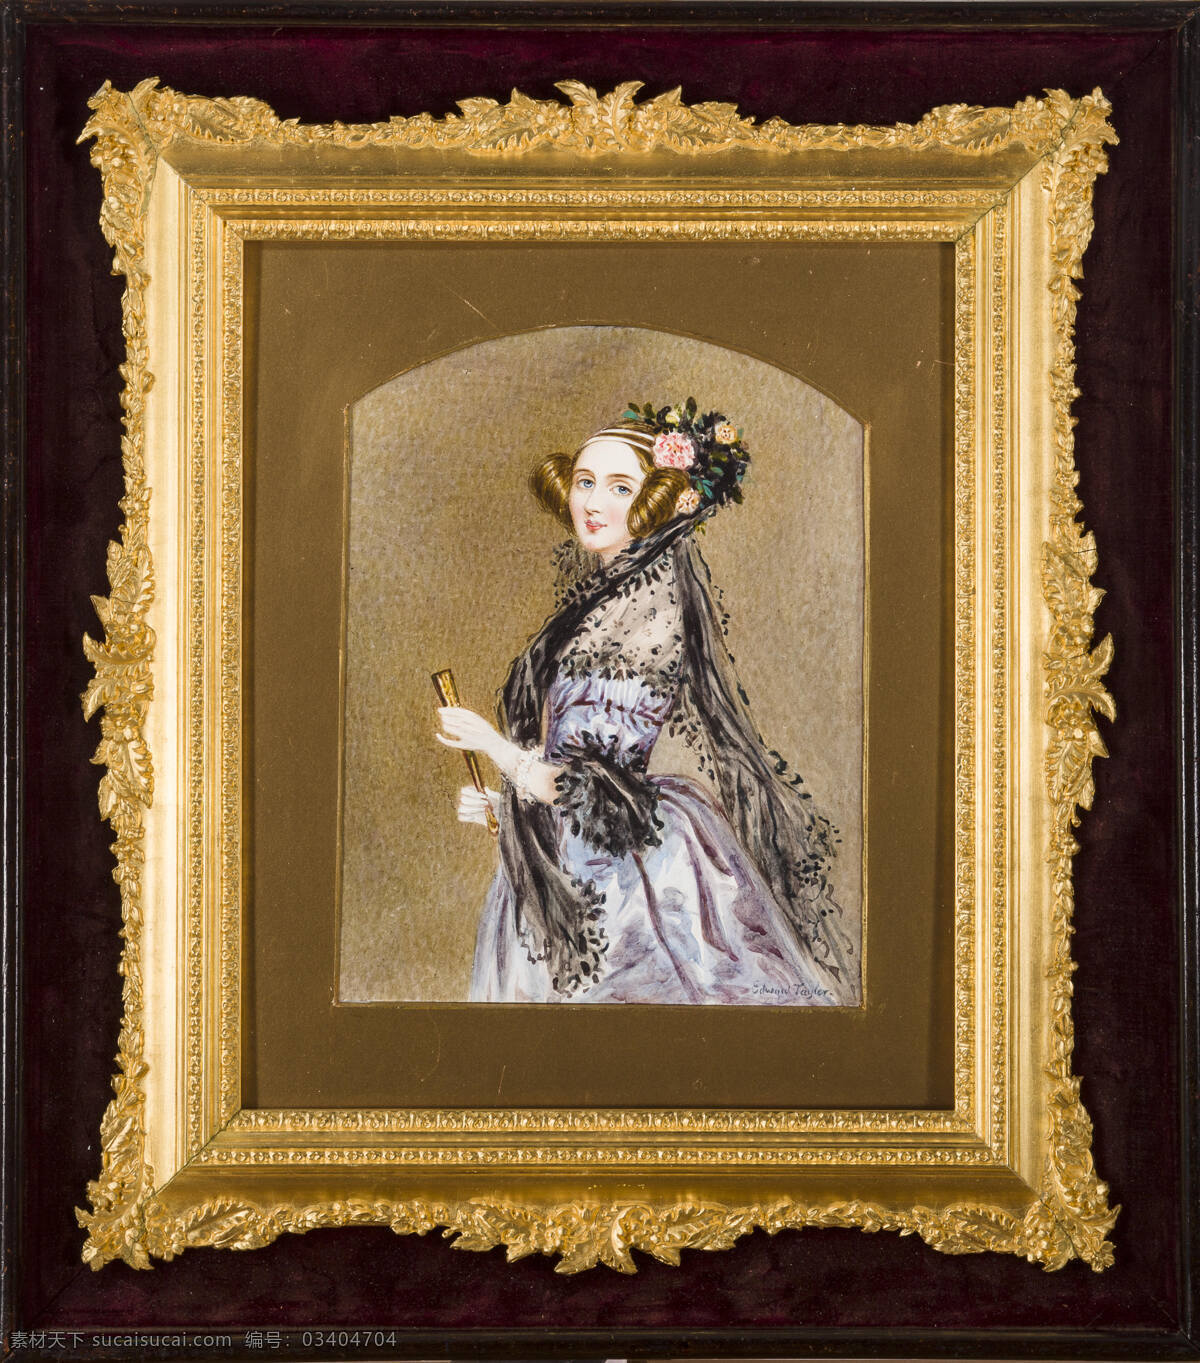 肯 特 公爵 夫人 维多利亚 路易斯哈格 作品 英国画家 萨克森 科堡 哥达 德国公主 维多利亚女王 生母 19世纪油画 水彩画 文化艺术 美术绘画